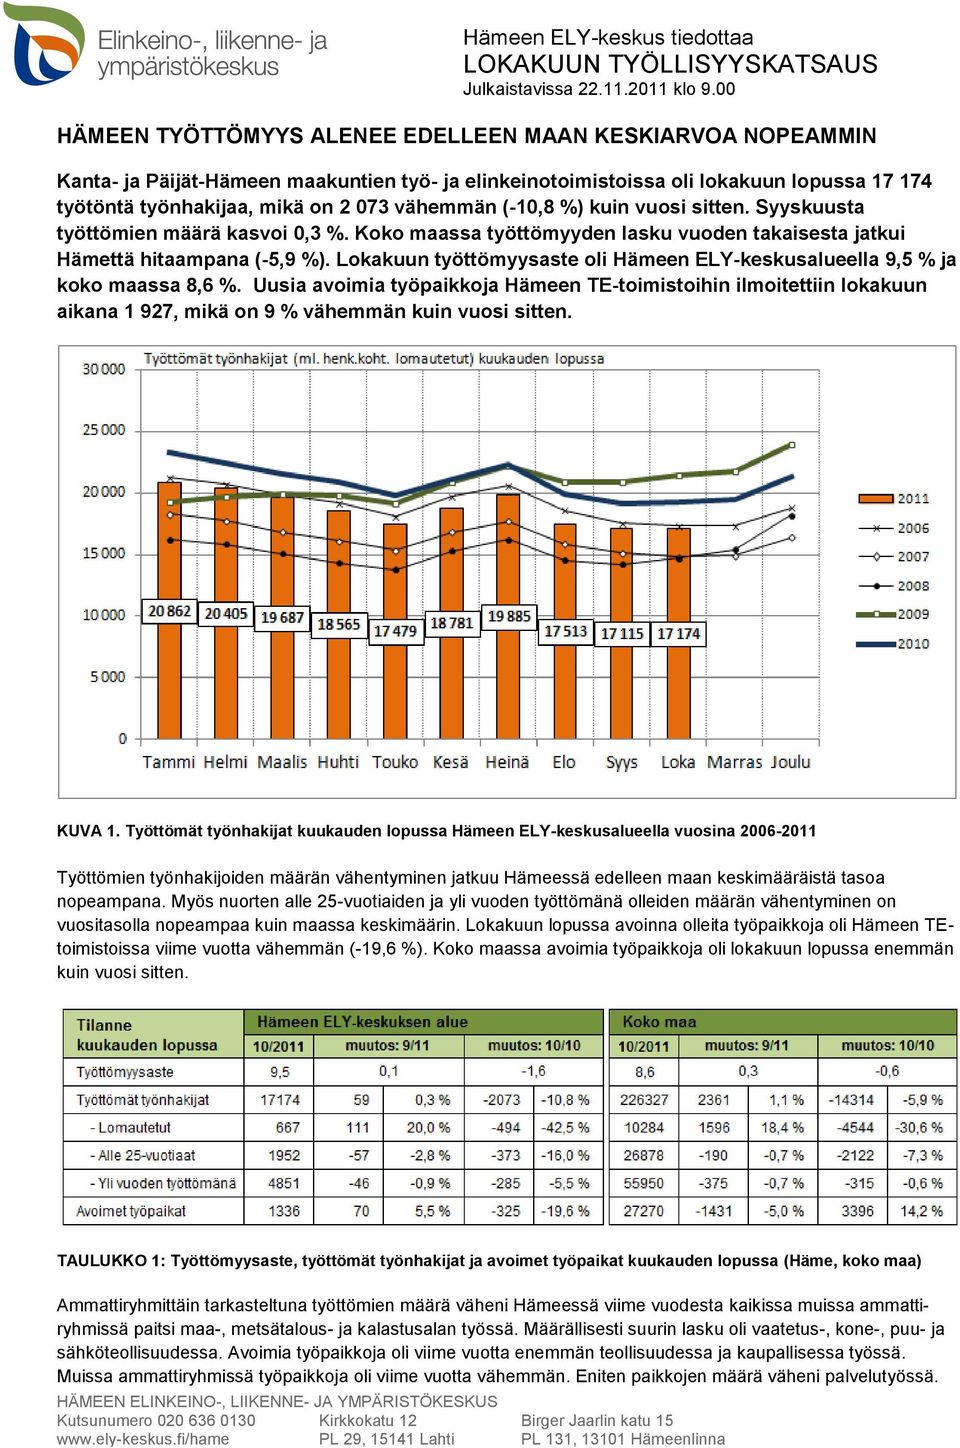 Lokakuun työttömyysaste oli Hämeen ELY-keskusalueella 9,5 % ja koko maassa 8,6 %.